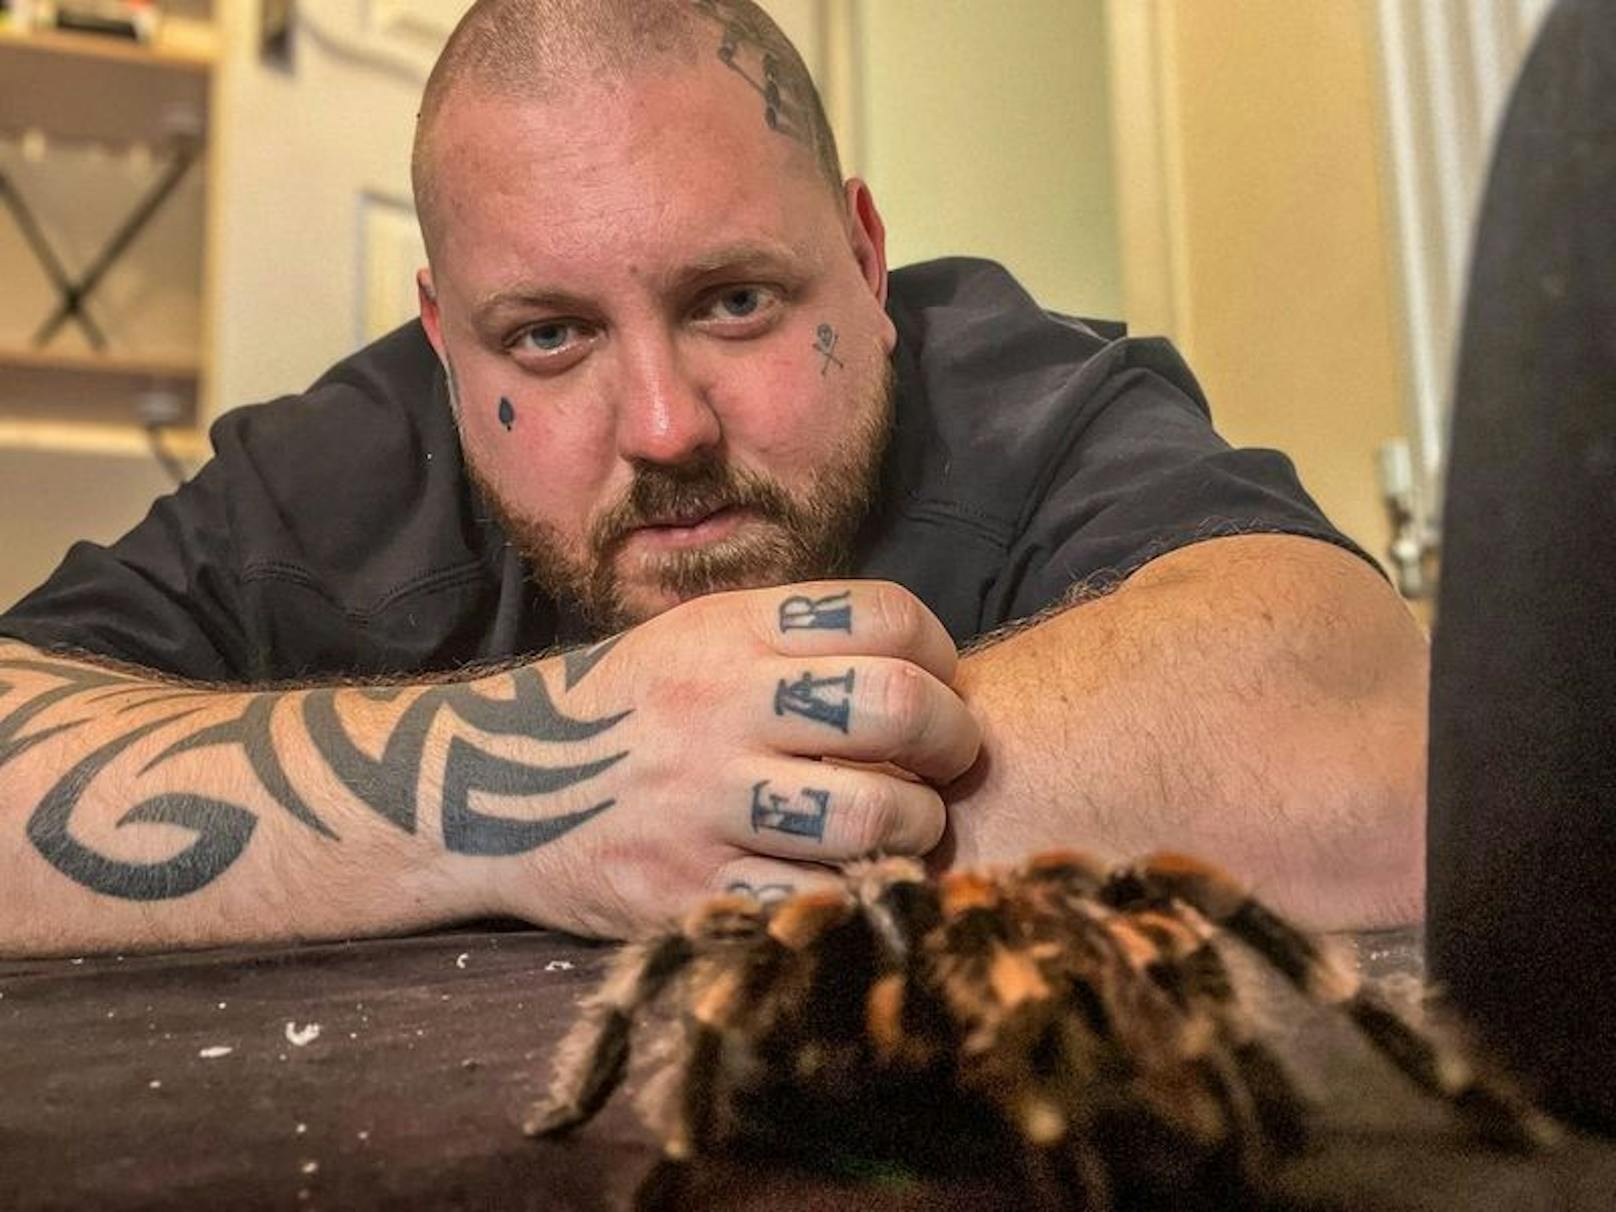 Die Ärzte stellen bei Aaron Phoenix eine bipolare Störung fest - daraufhin schaffte er sich 120 Vogelspinnen an. 